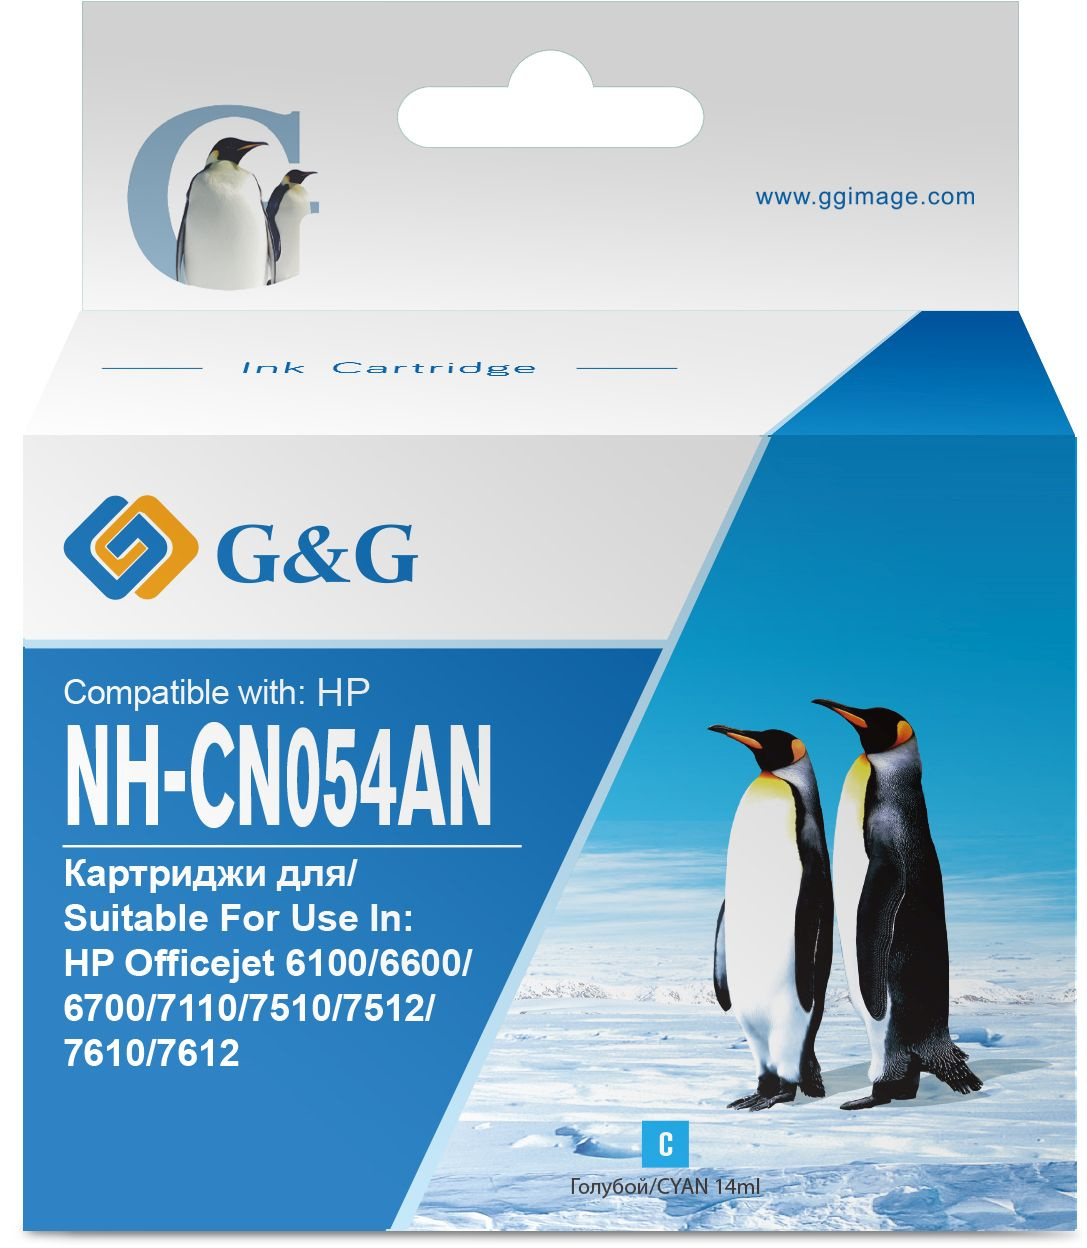  G&G NH-CN054AN, 933XL,  / NH-CN054AN